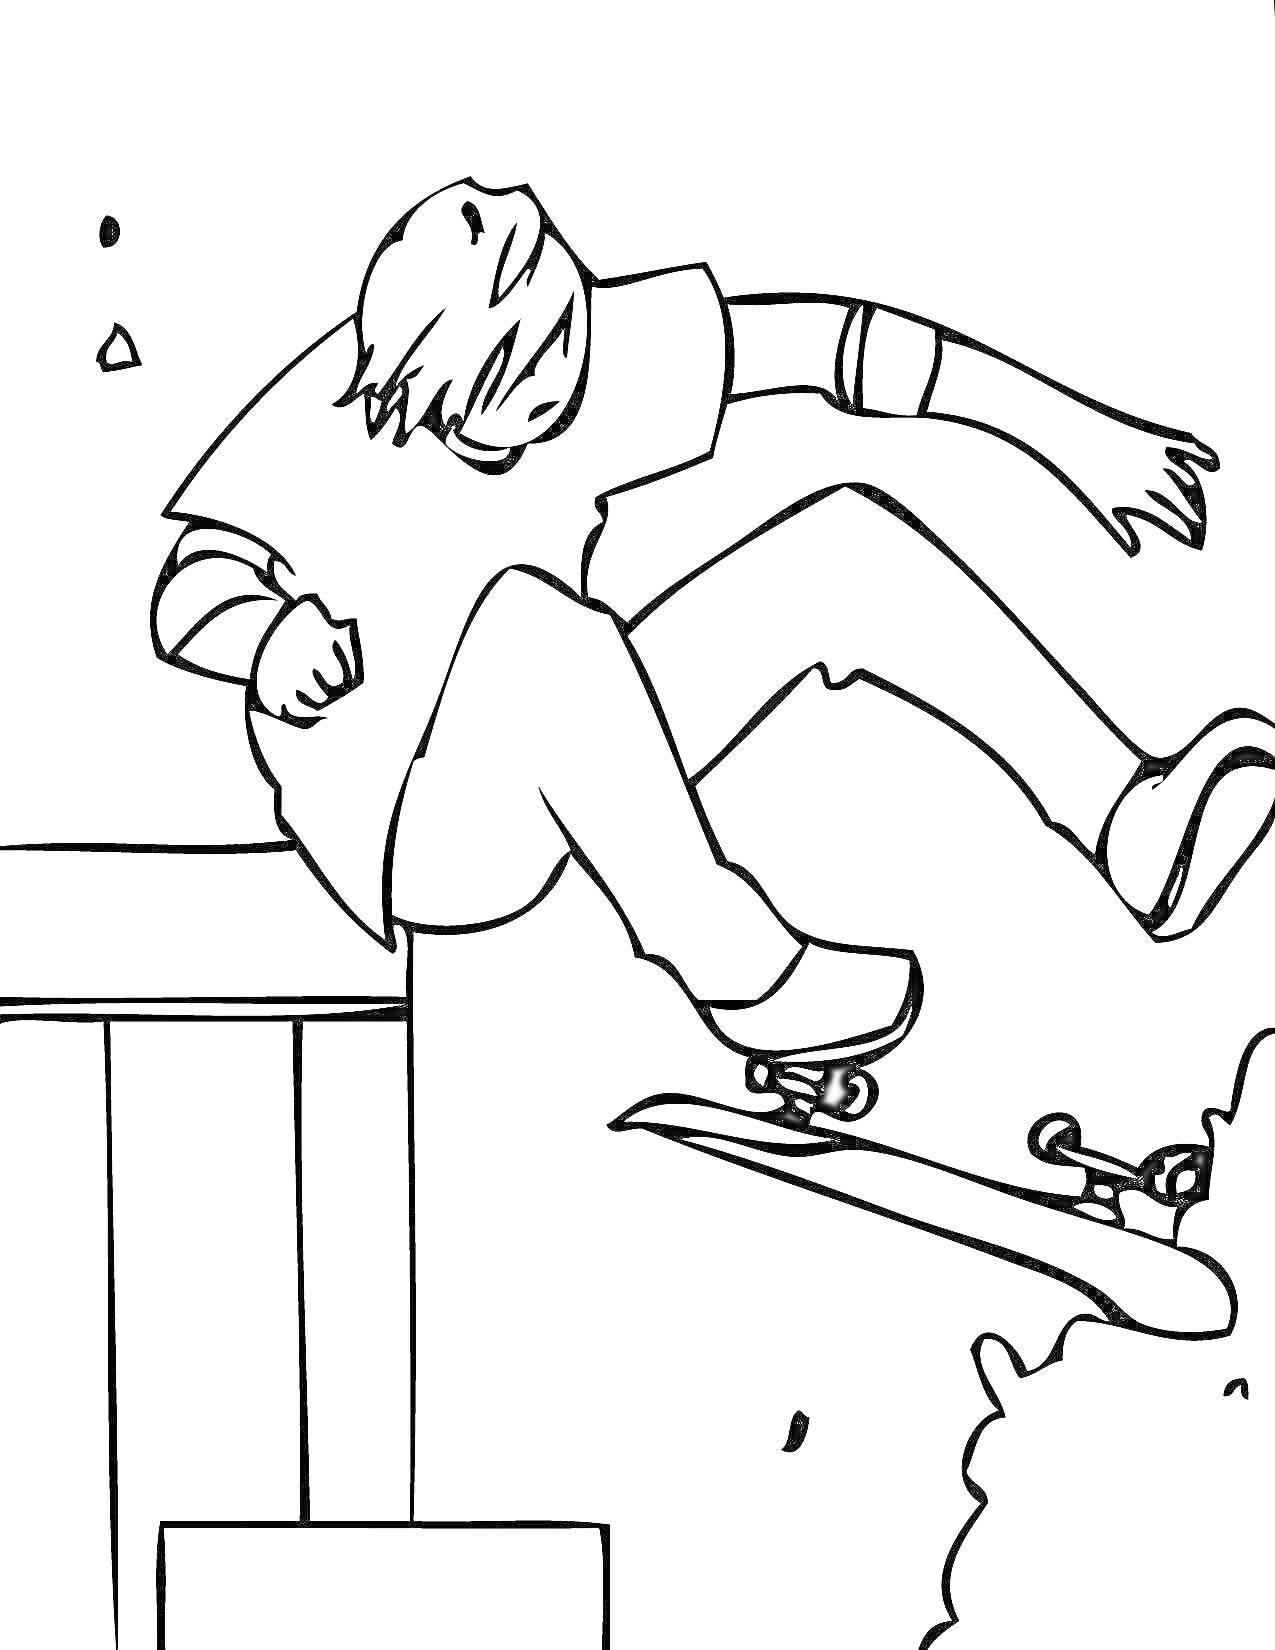 Раскраска Скейтбордист в прыжке с перил